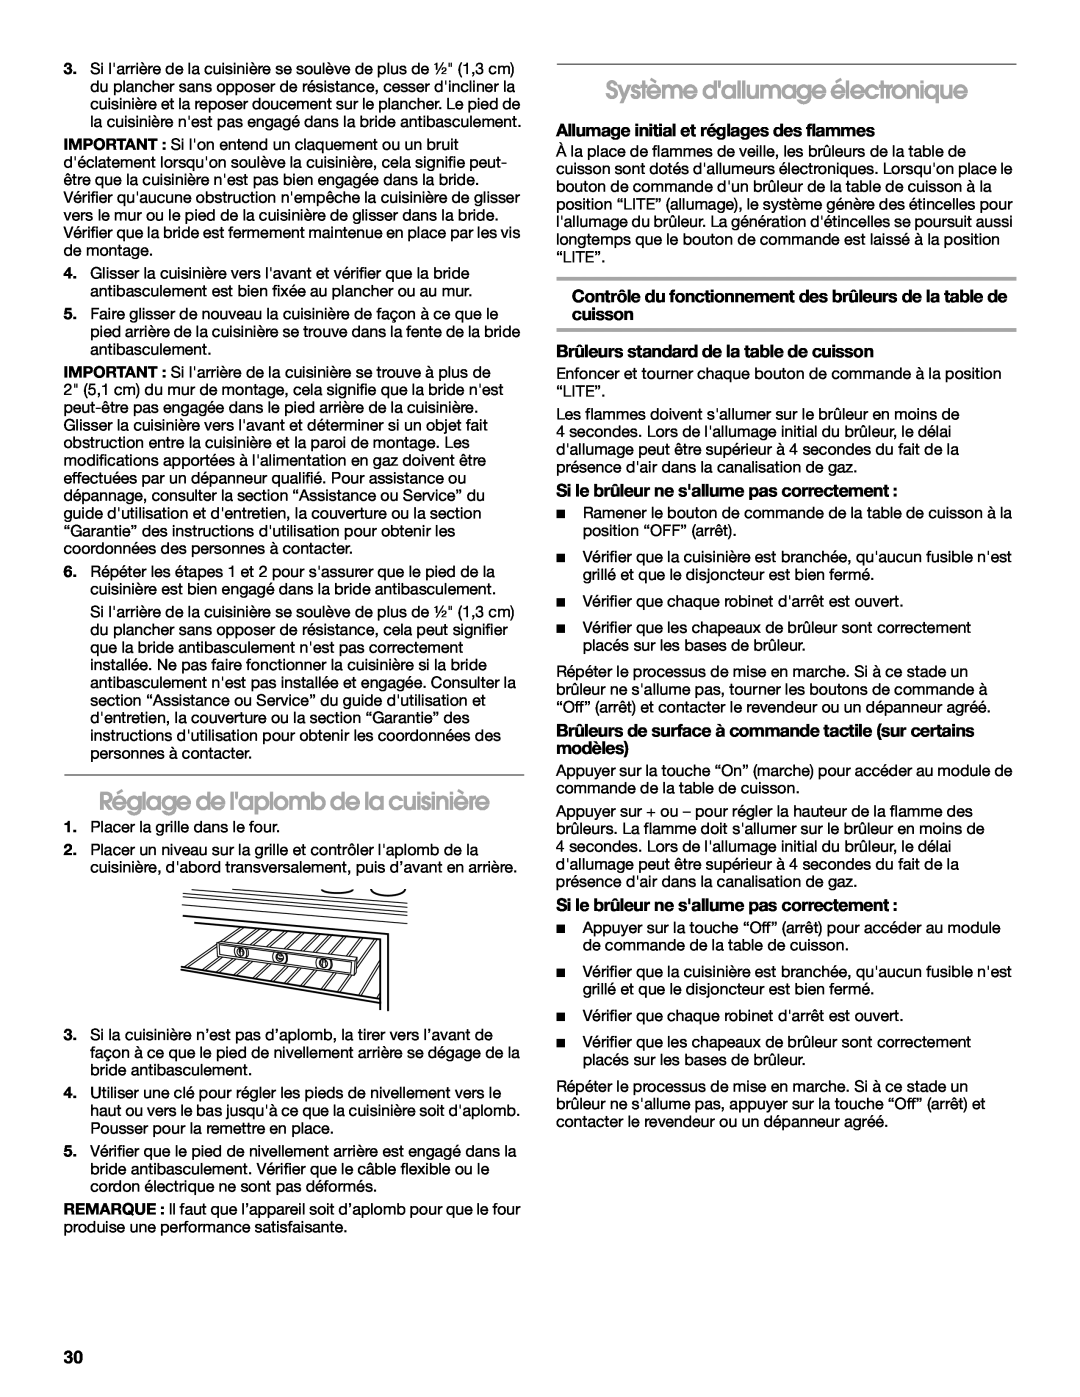 KitchenAid W10526086A installation instructions Réglage de laplomb de la cuisinière, Système dallumage électronique 